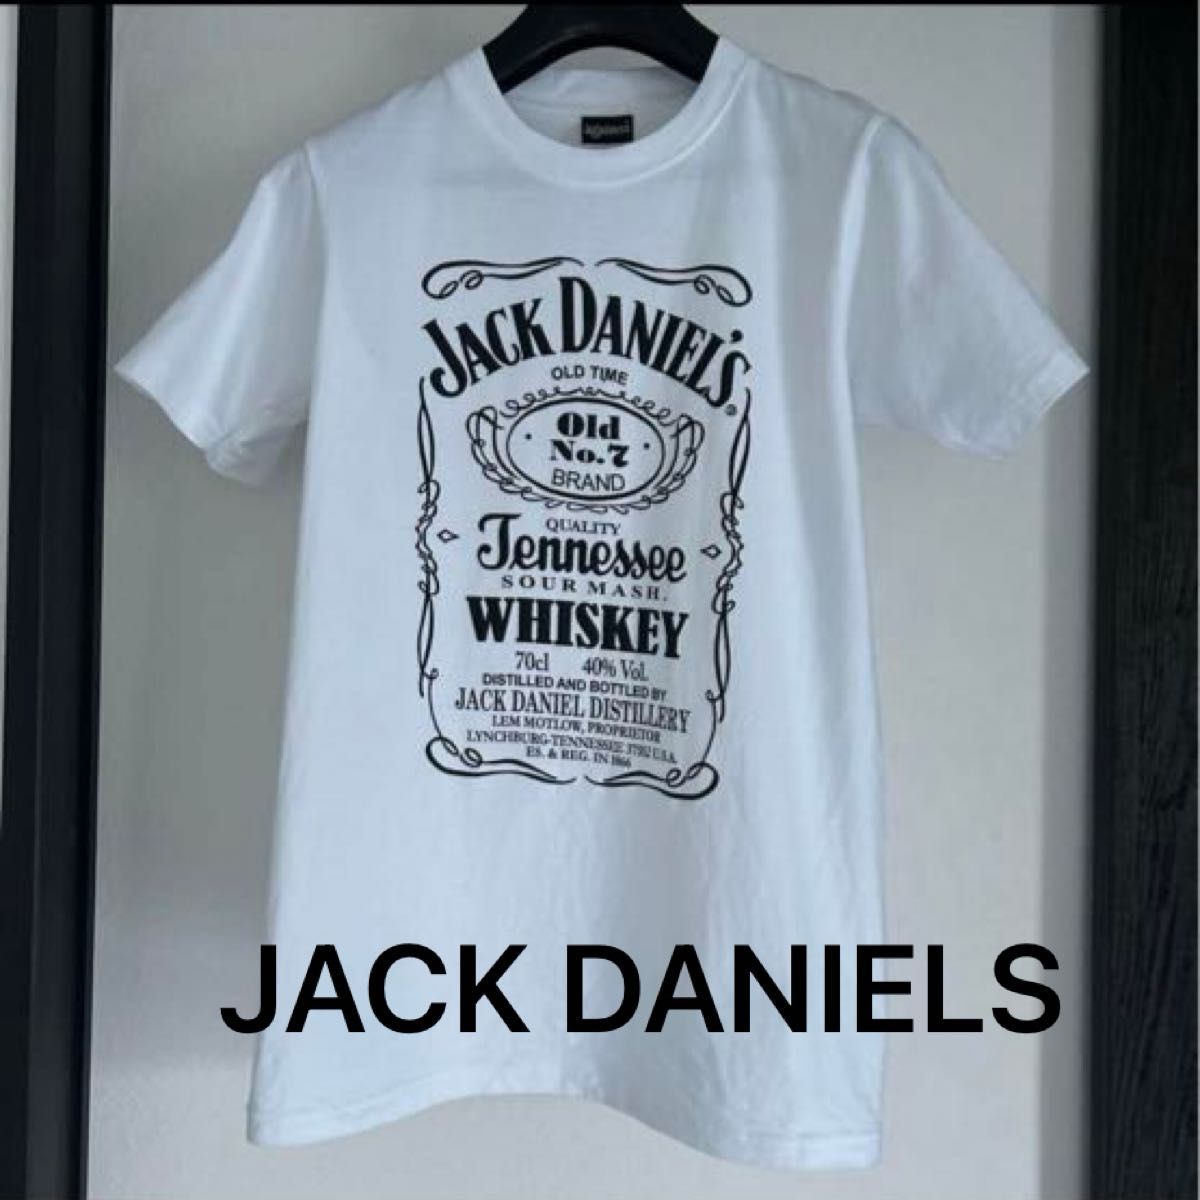 JACK DANIELS ジャックダニエル Tシャツ ホワイト ブラックロゴ 半袖Tシャツ ウィスキー